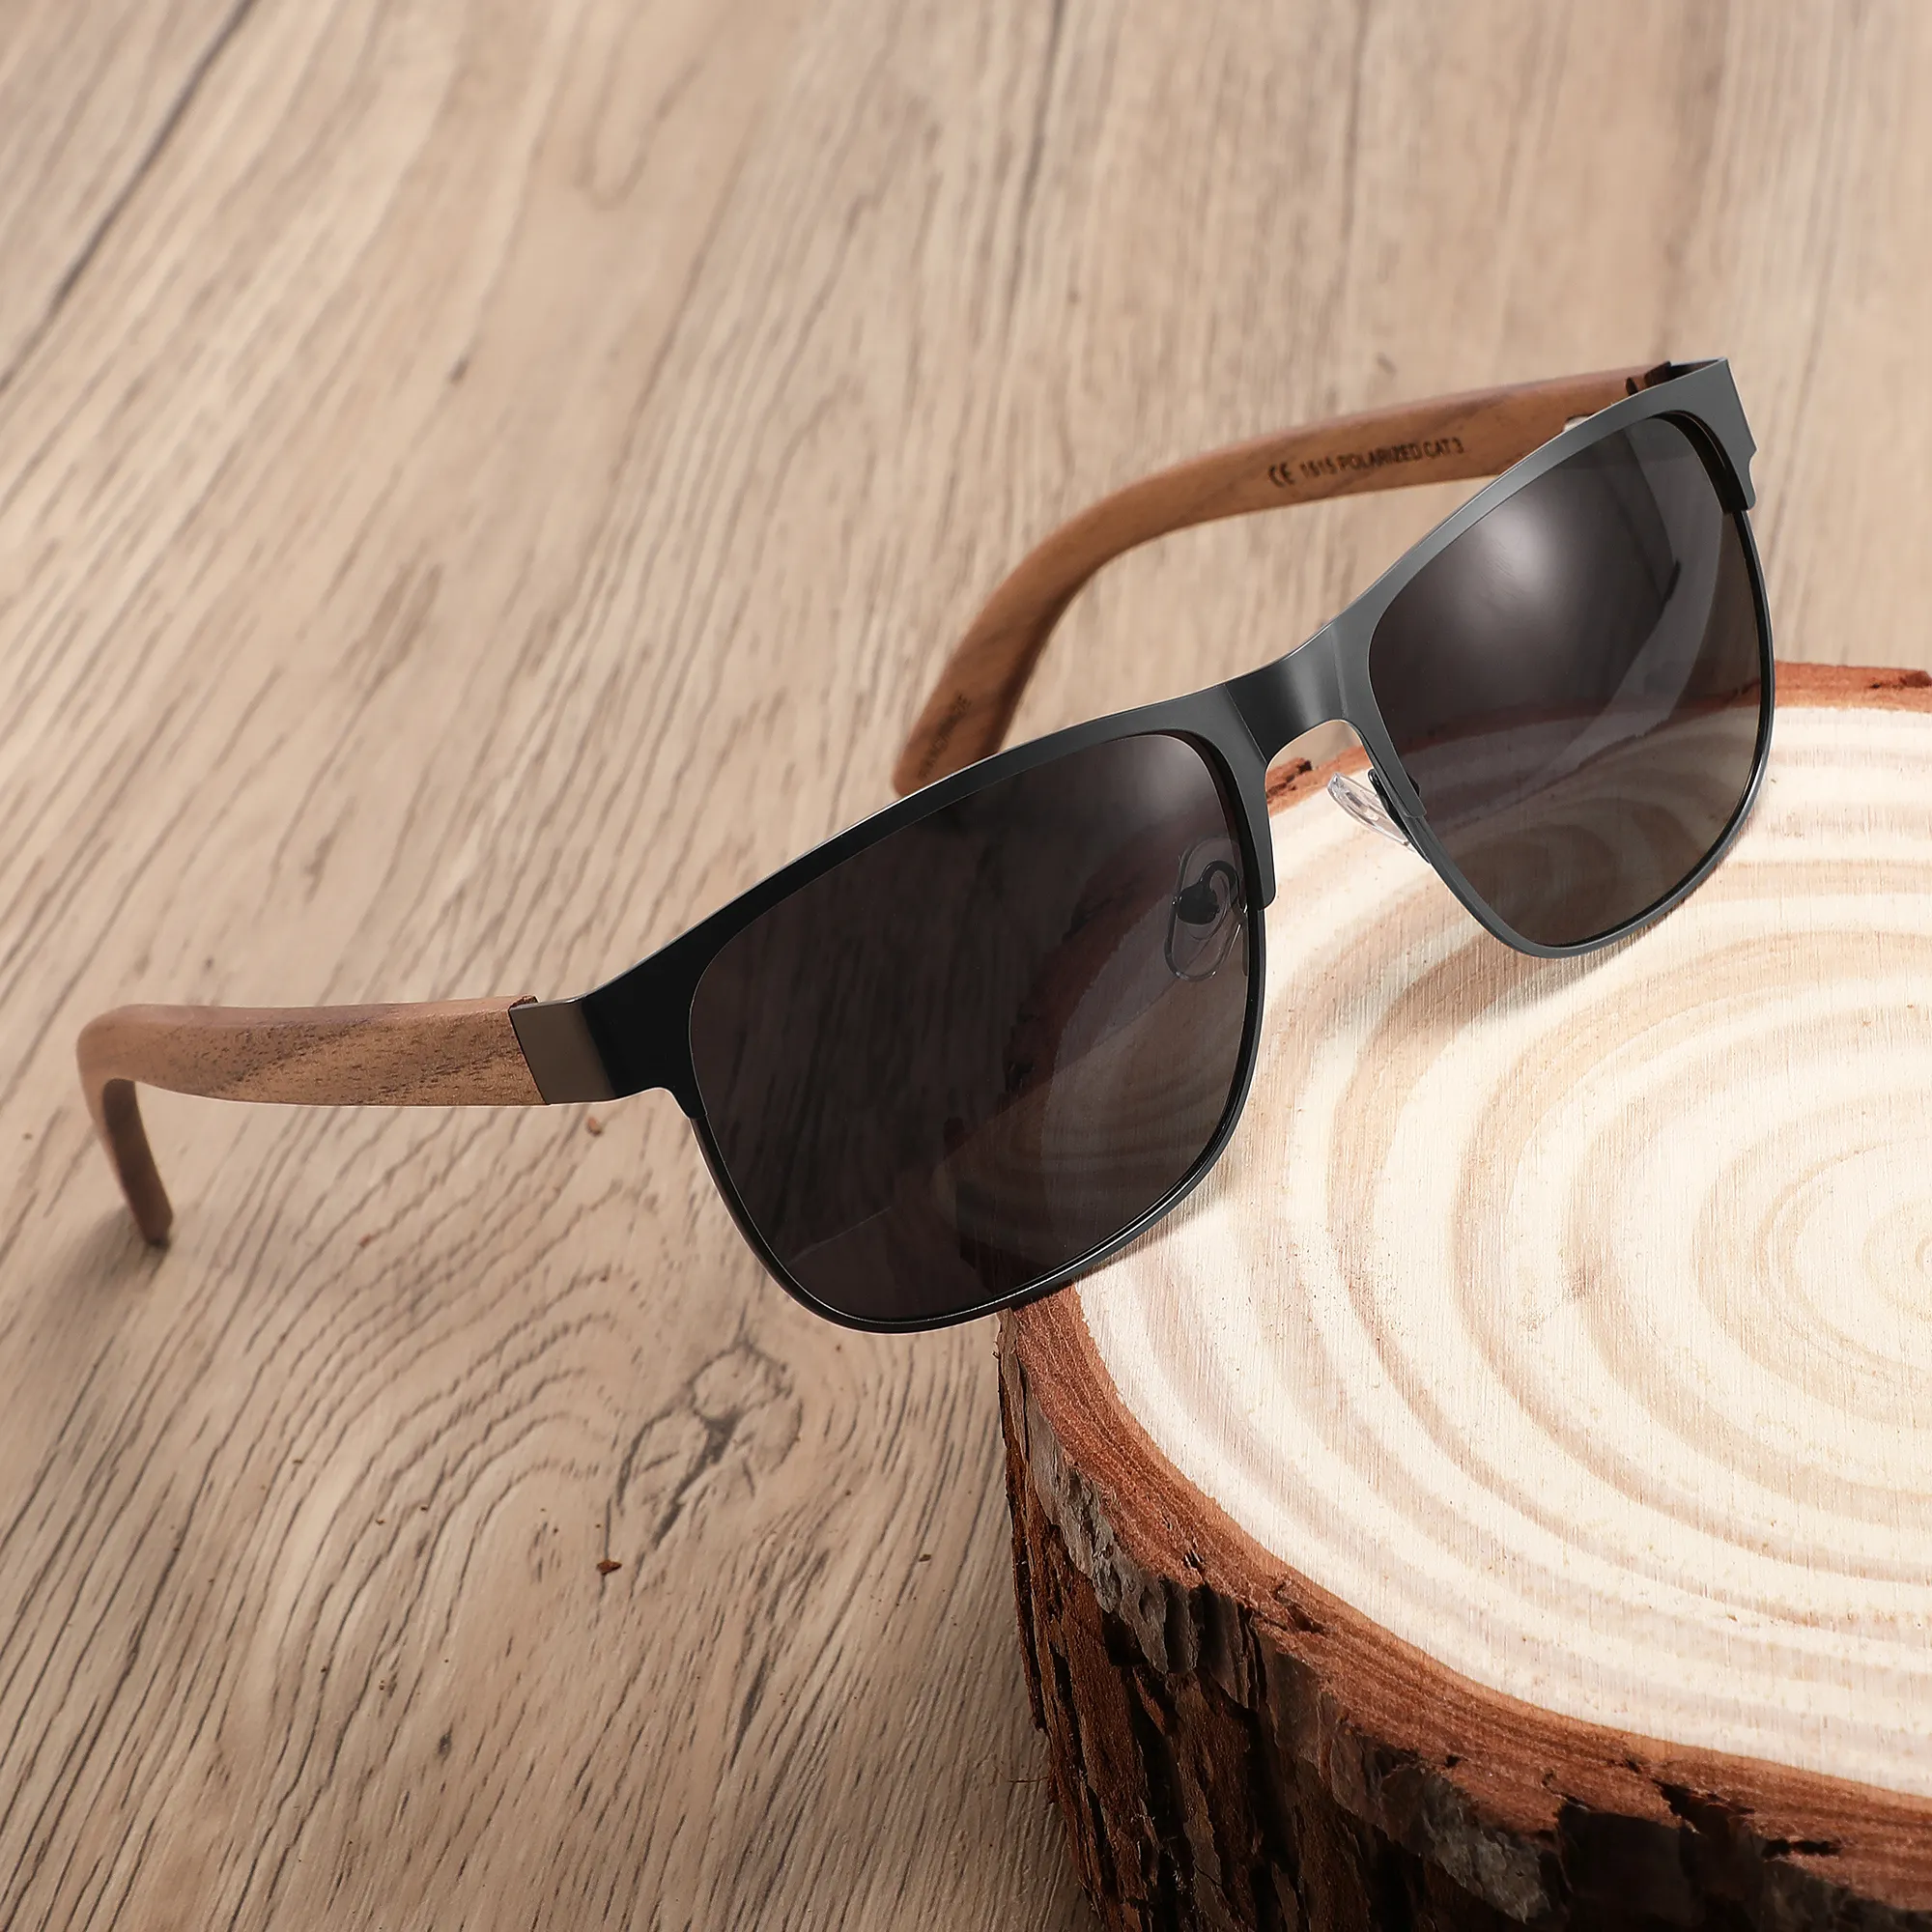 CONCHEN ücretsiz lazer logosu moda ahşap ceviz güneş gözlüğü Uv400 erkekler polarize güneş gözlüğü